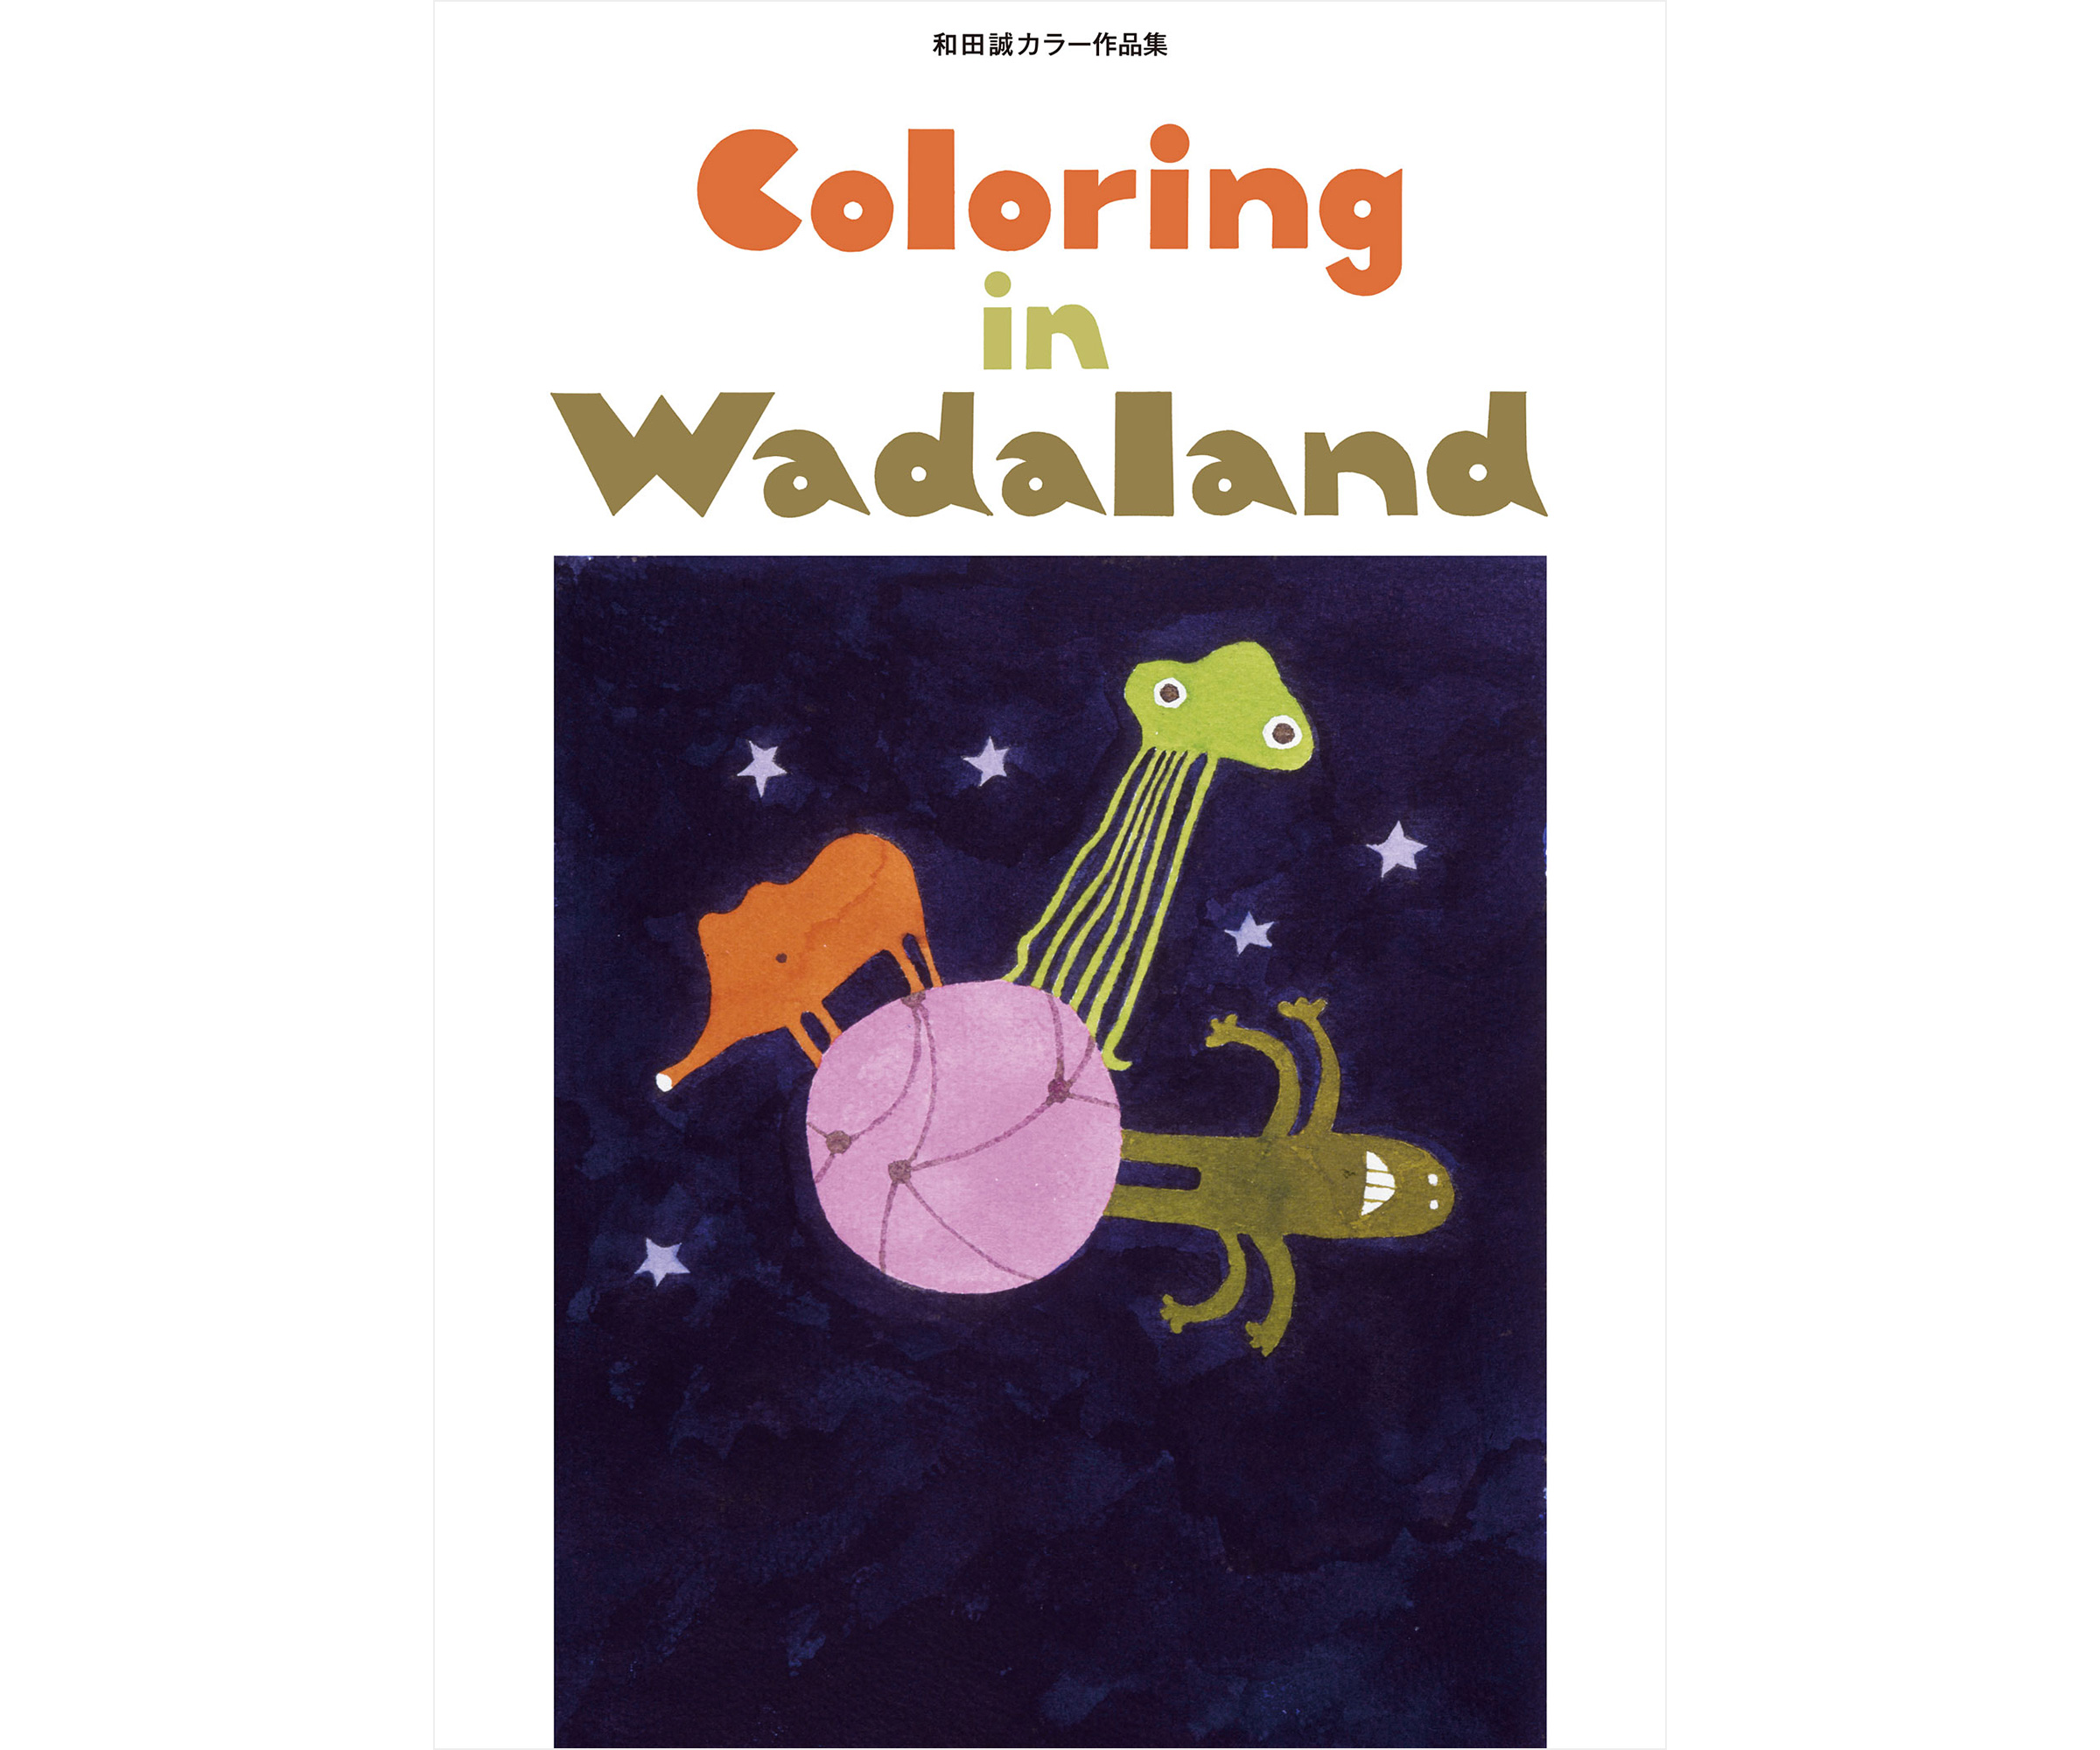 イラストレーター 和田誠 自著「Coloring in Wadaland」